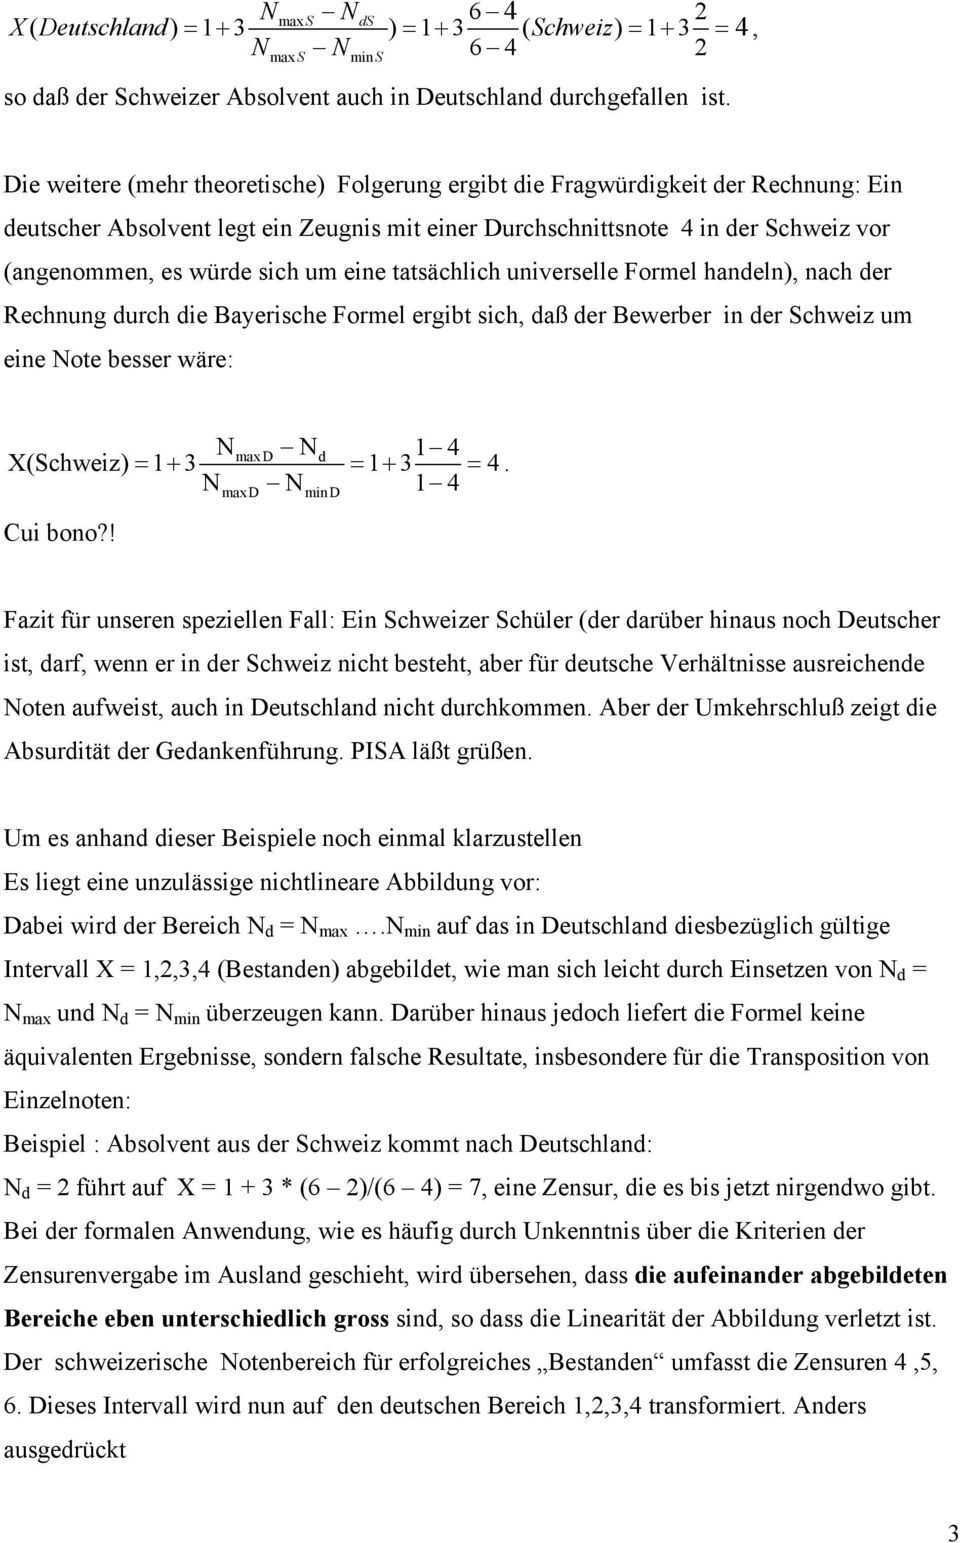 um eine tatsächlich universelle Formel handeln), nach der Rechnung durch die Bayerische Formel ergibt sich, daß der Bewerber in der Schweiz um eine Note besser wäre: N N 1 4 = + = + = N N 1 4 max D d